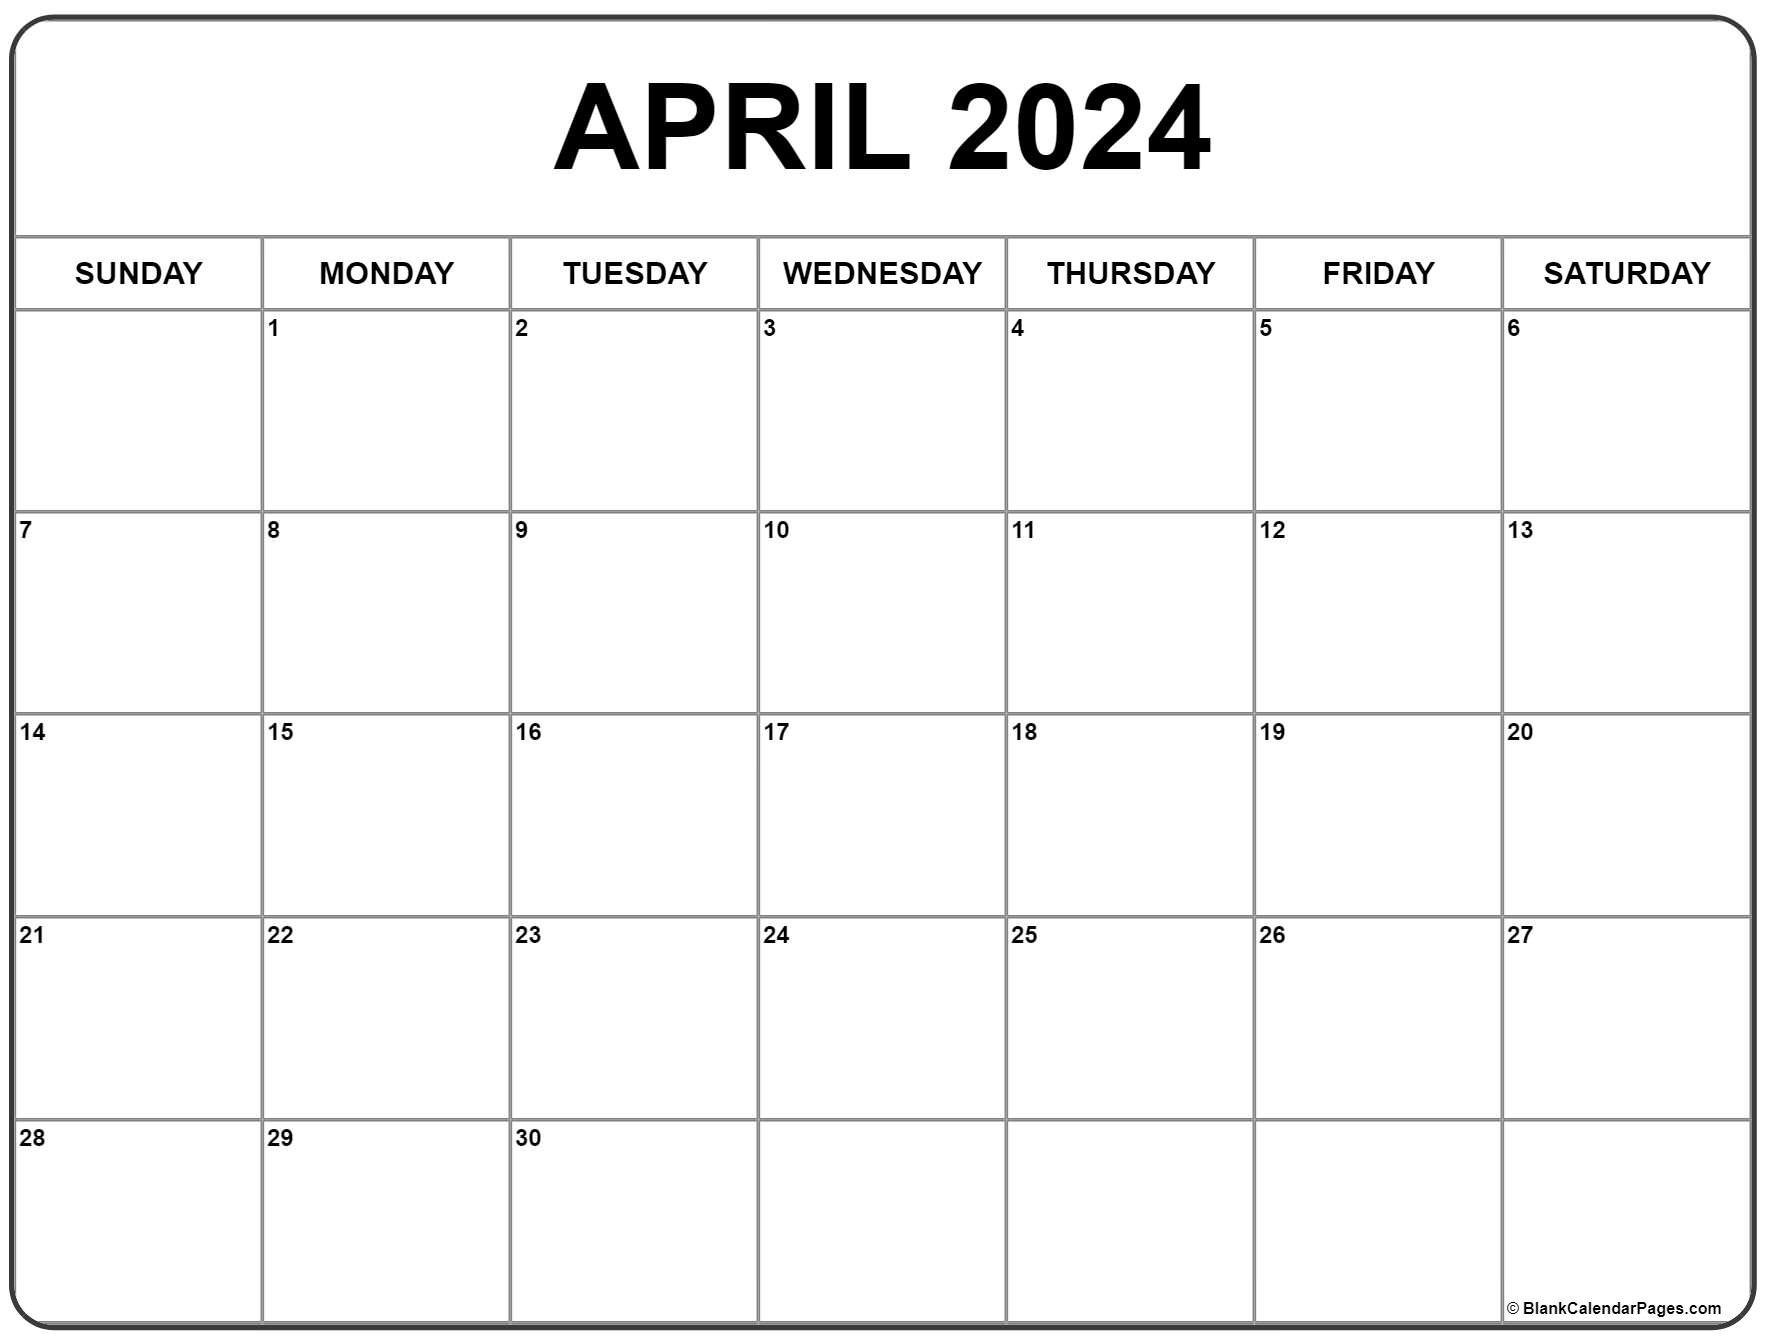 April 2024 Calendar | Free Printable Calendar for Printable Free April 2024 Calendar